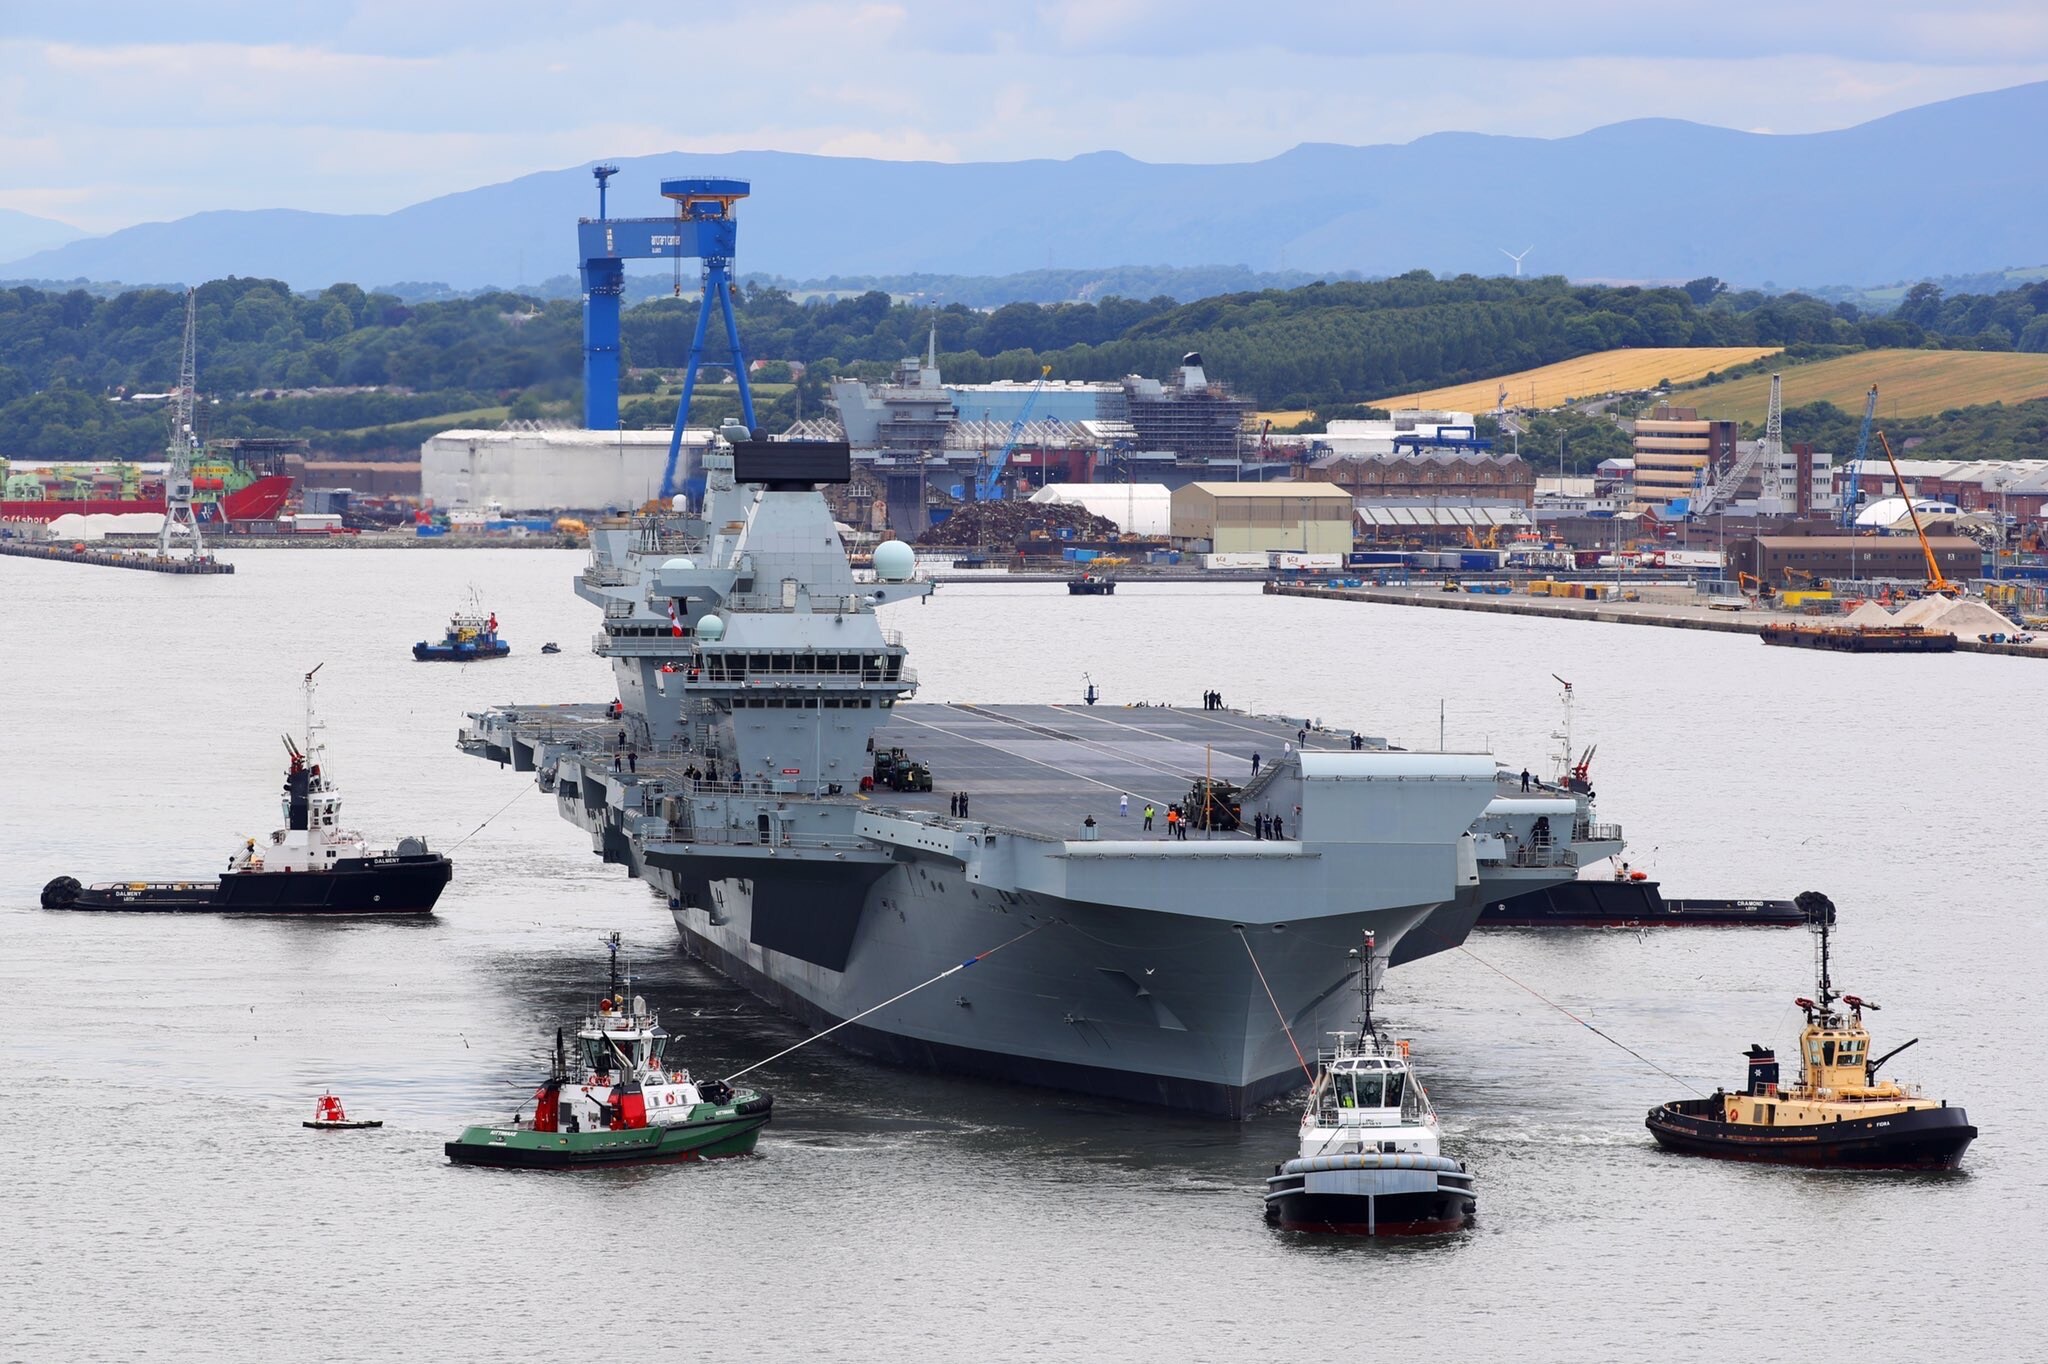 Portaaviones Queen Elizabeth: zarpa el mayor buque de guerra jamás construido en Reino Unido